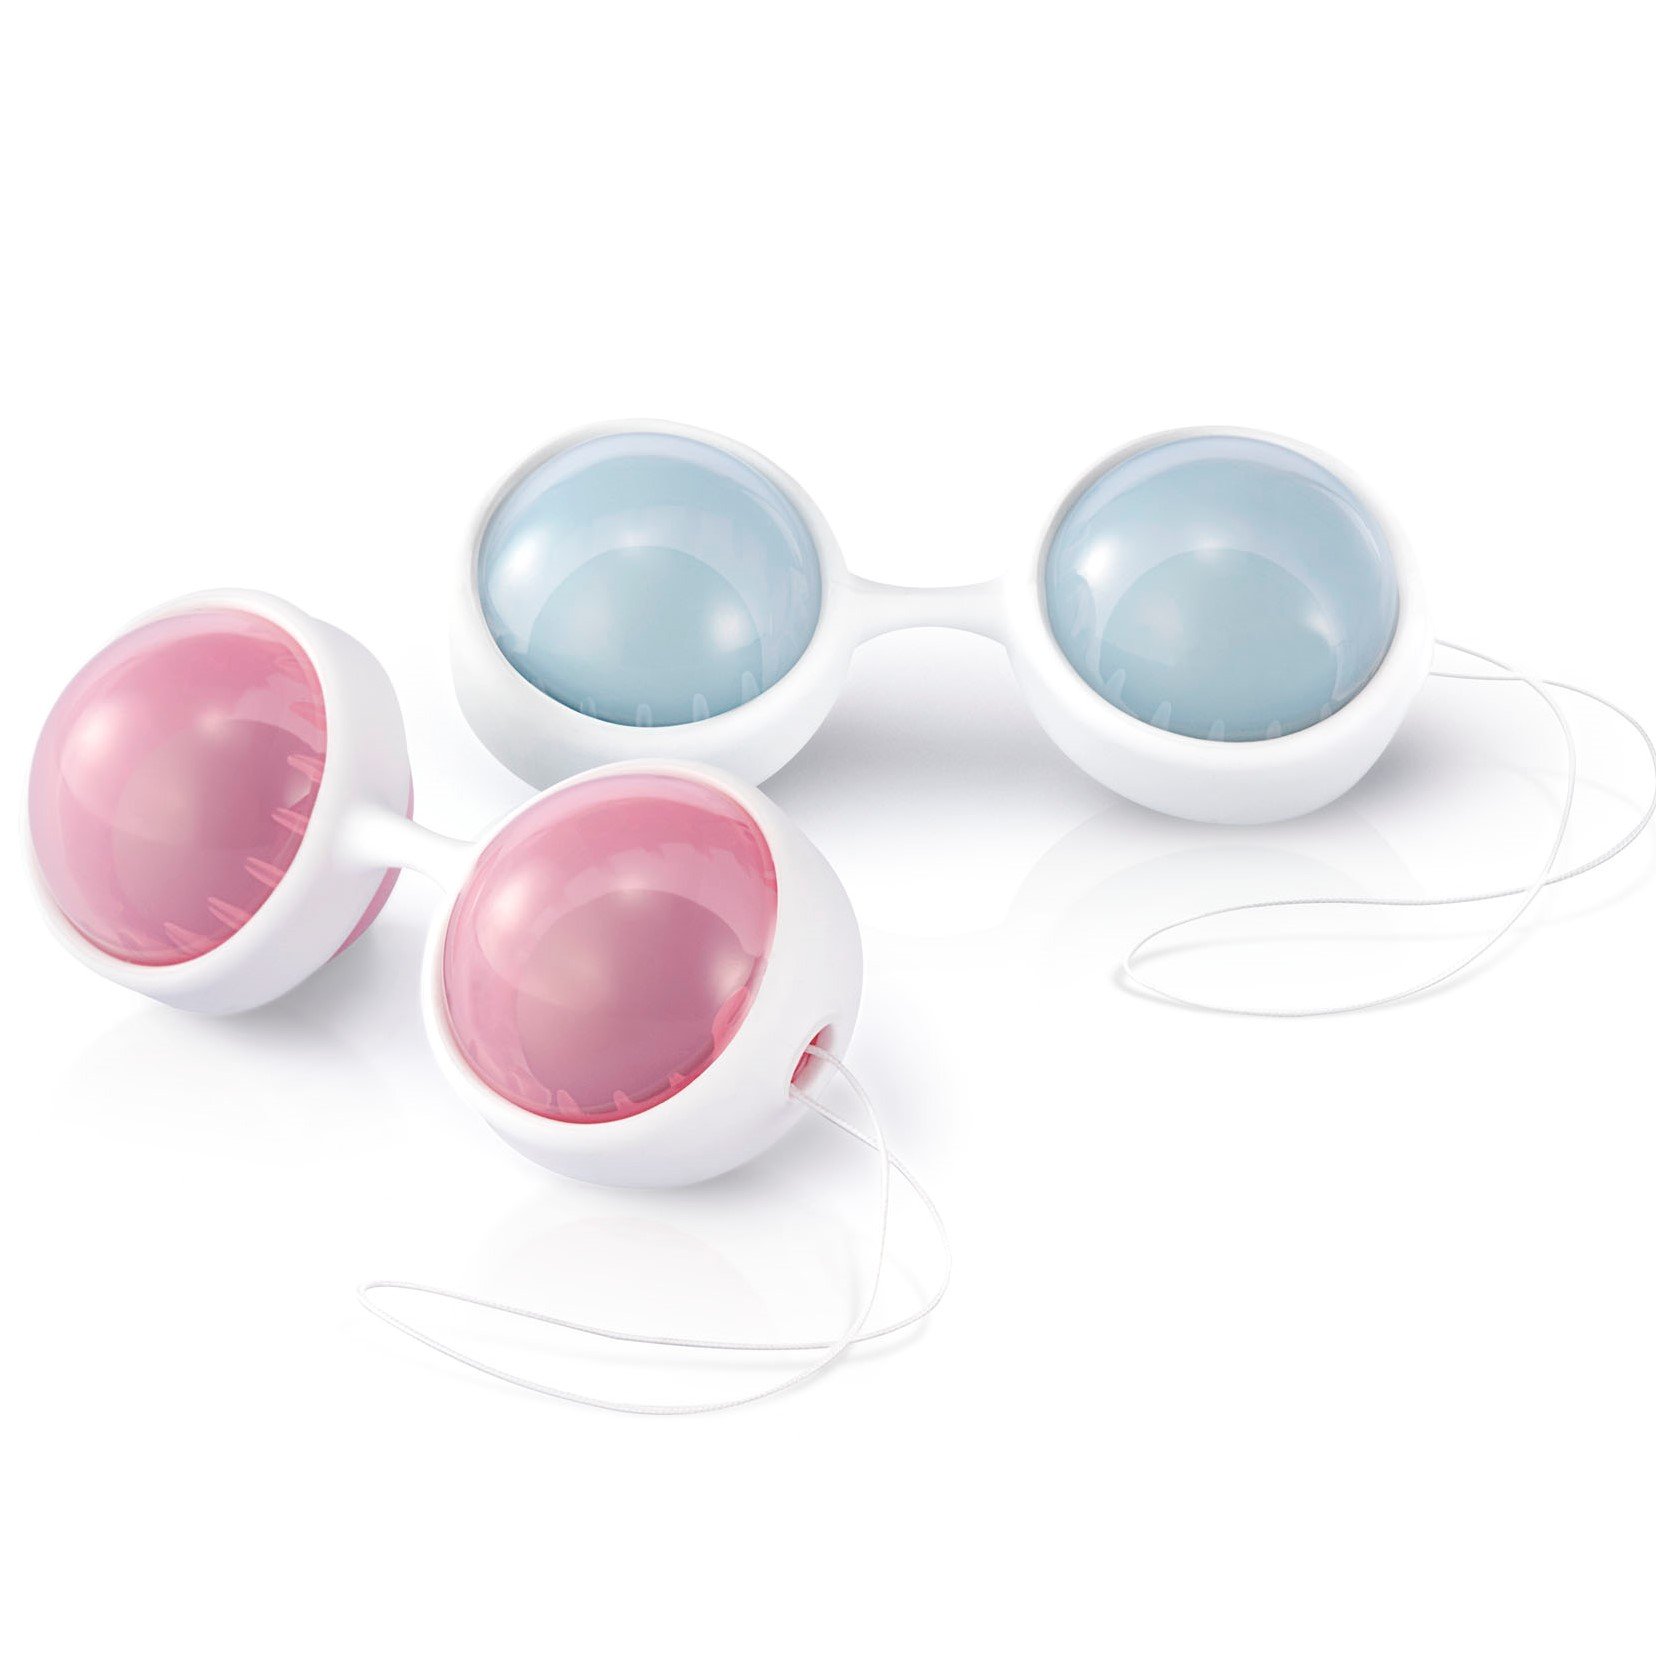 Estimulador LELO Beads Bolas de Ejercicios Kegel para Mujeres (Todas Las Edades - Bolas Lastradas de Silicona de Primera Calidad Con Cordón)